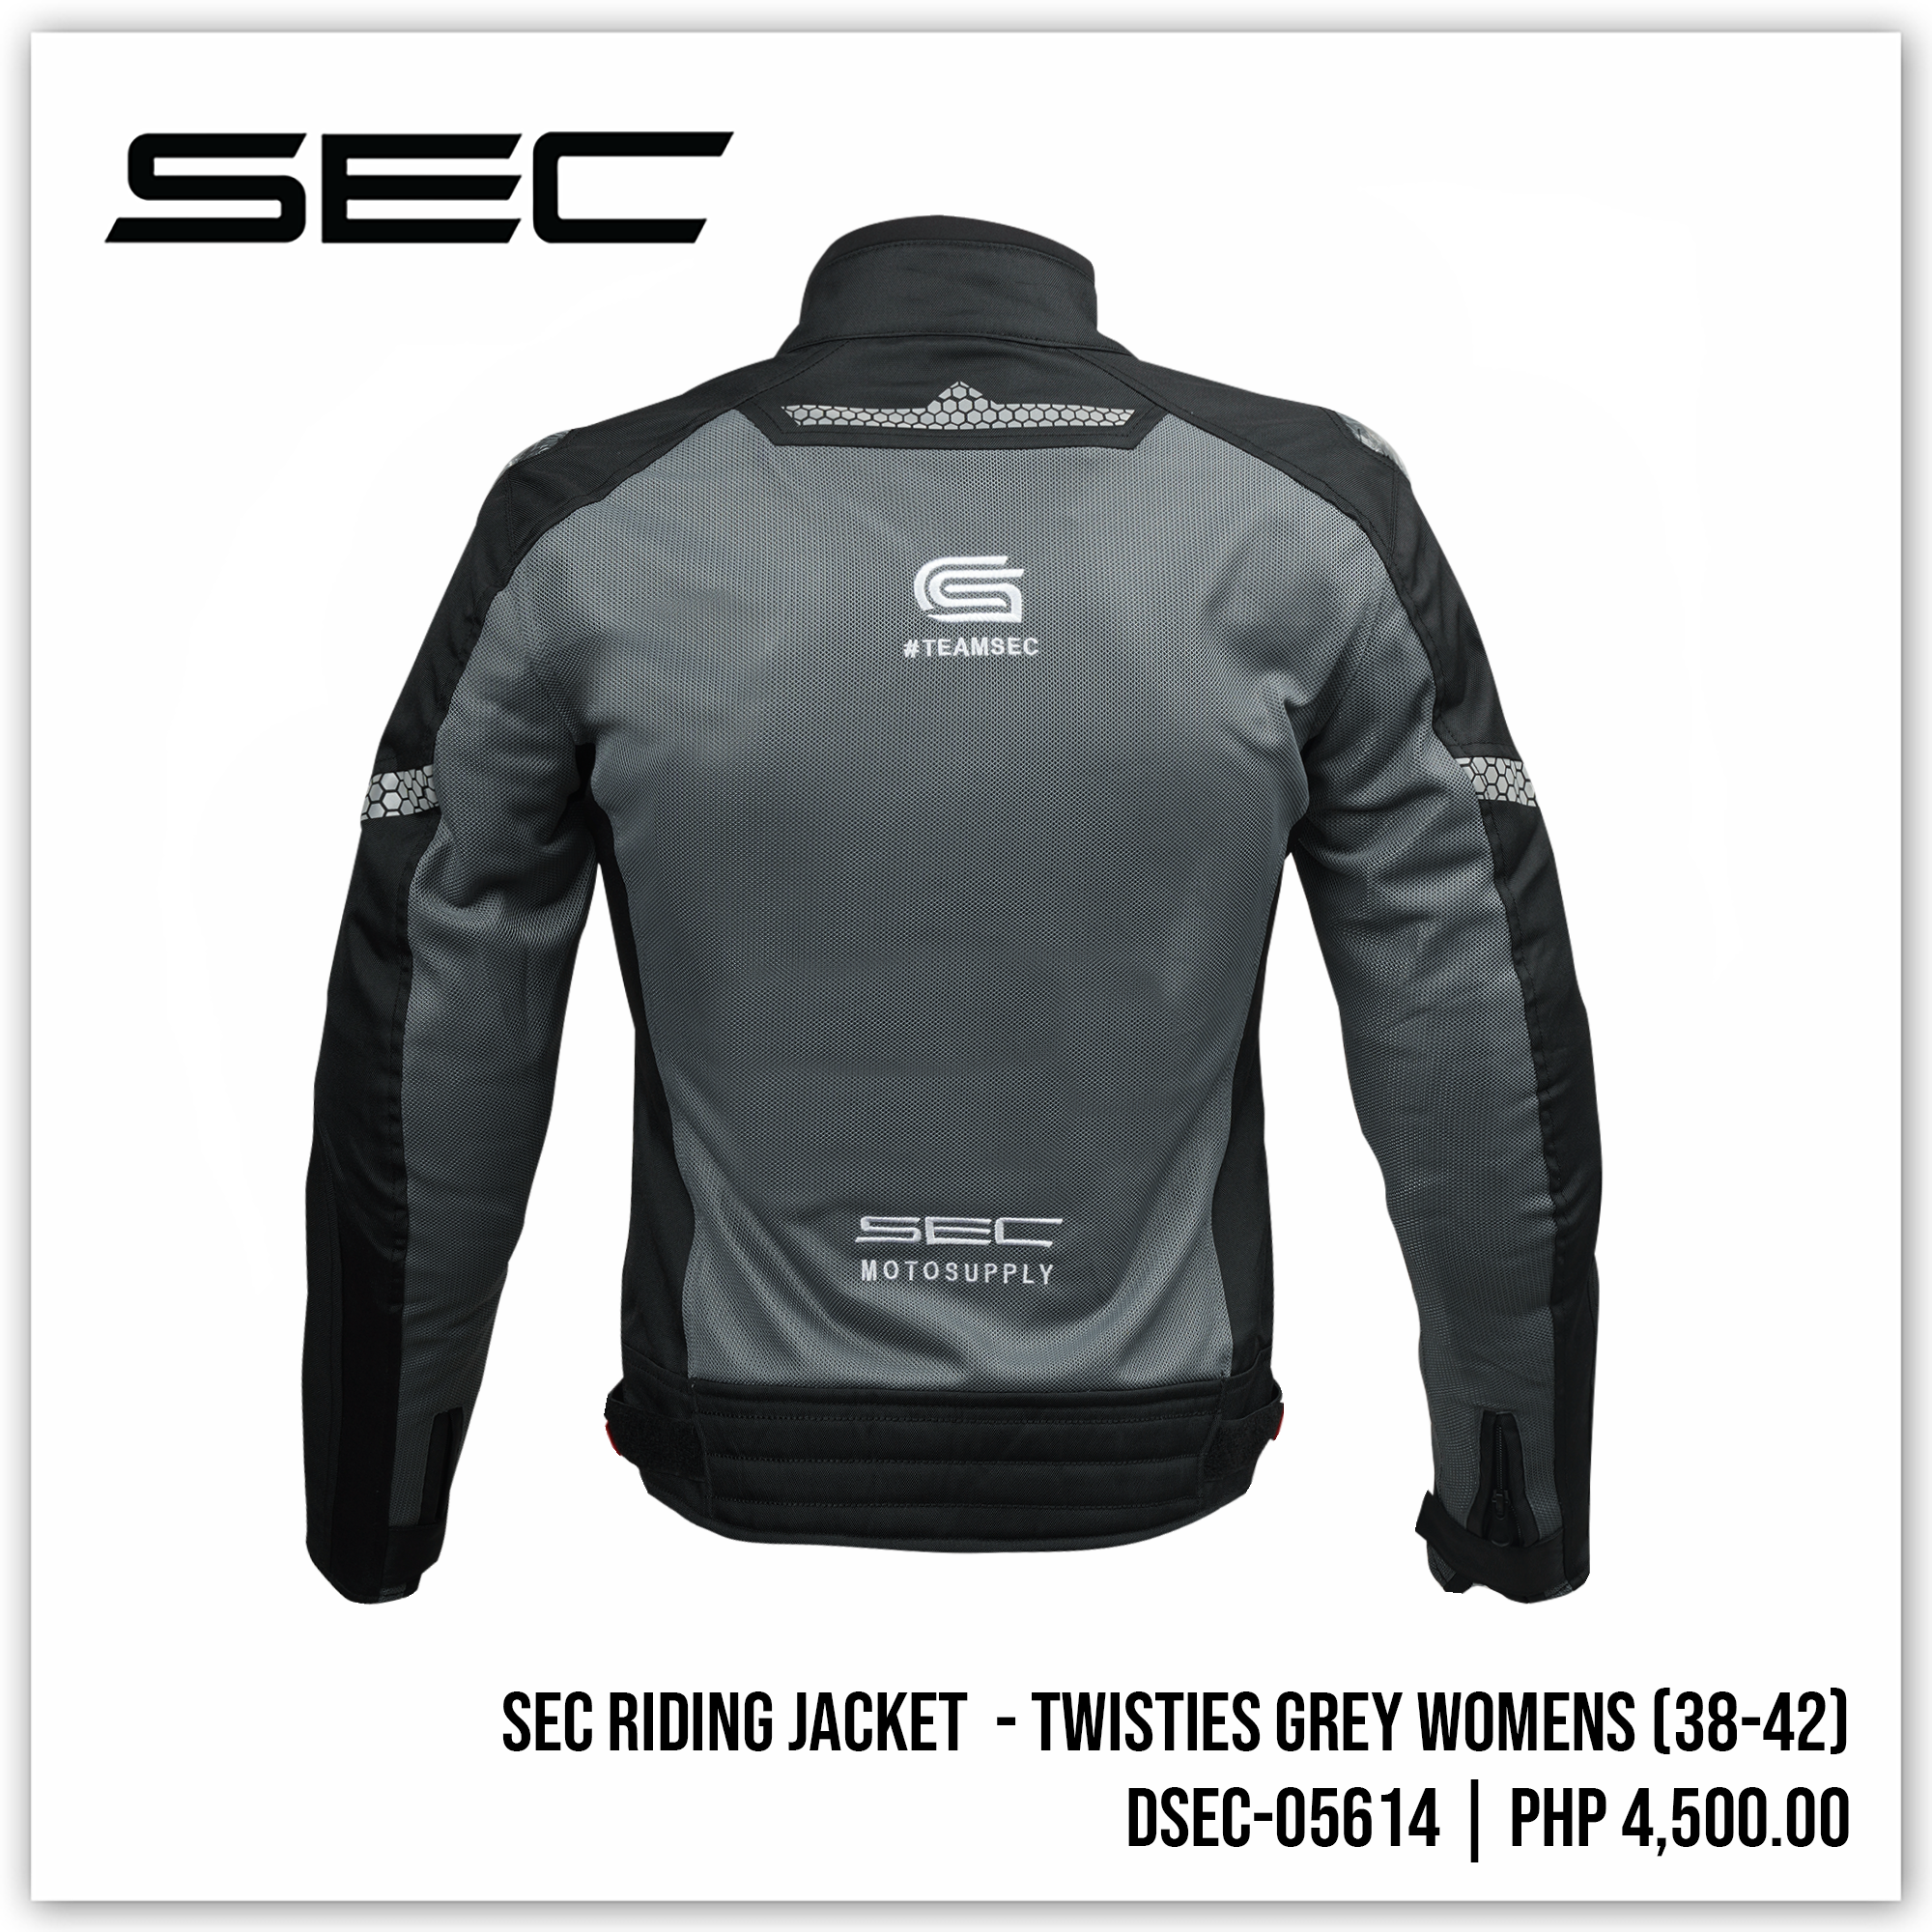 SEC Riding Jacket - Twisties Grey Womens